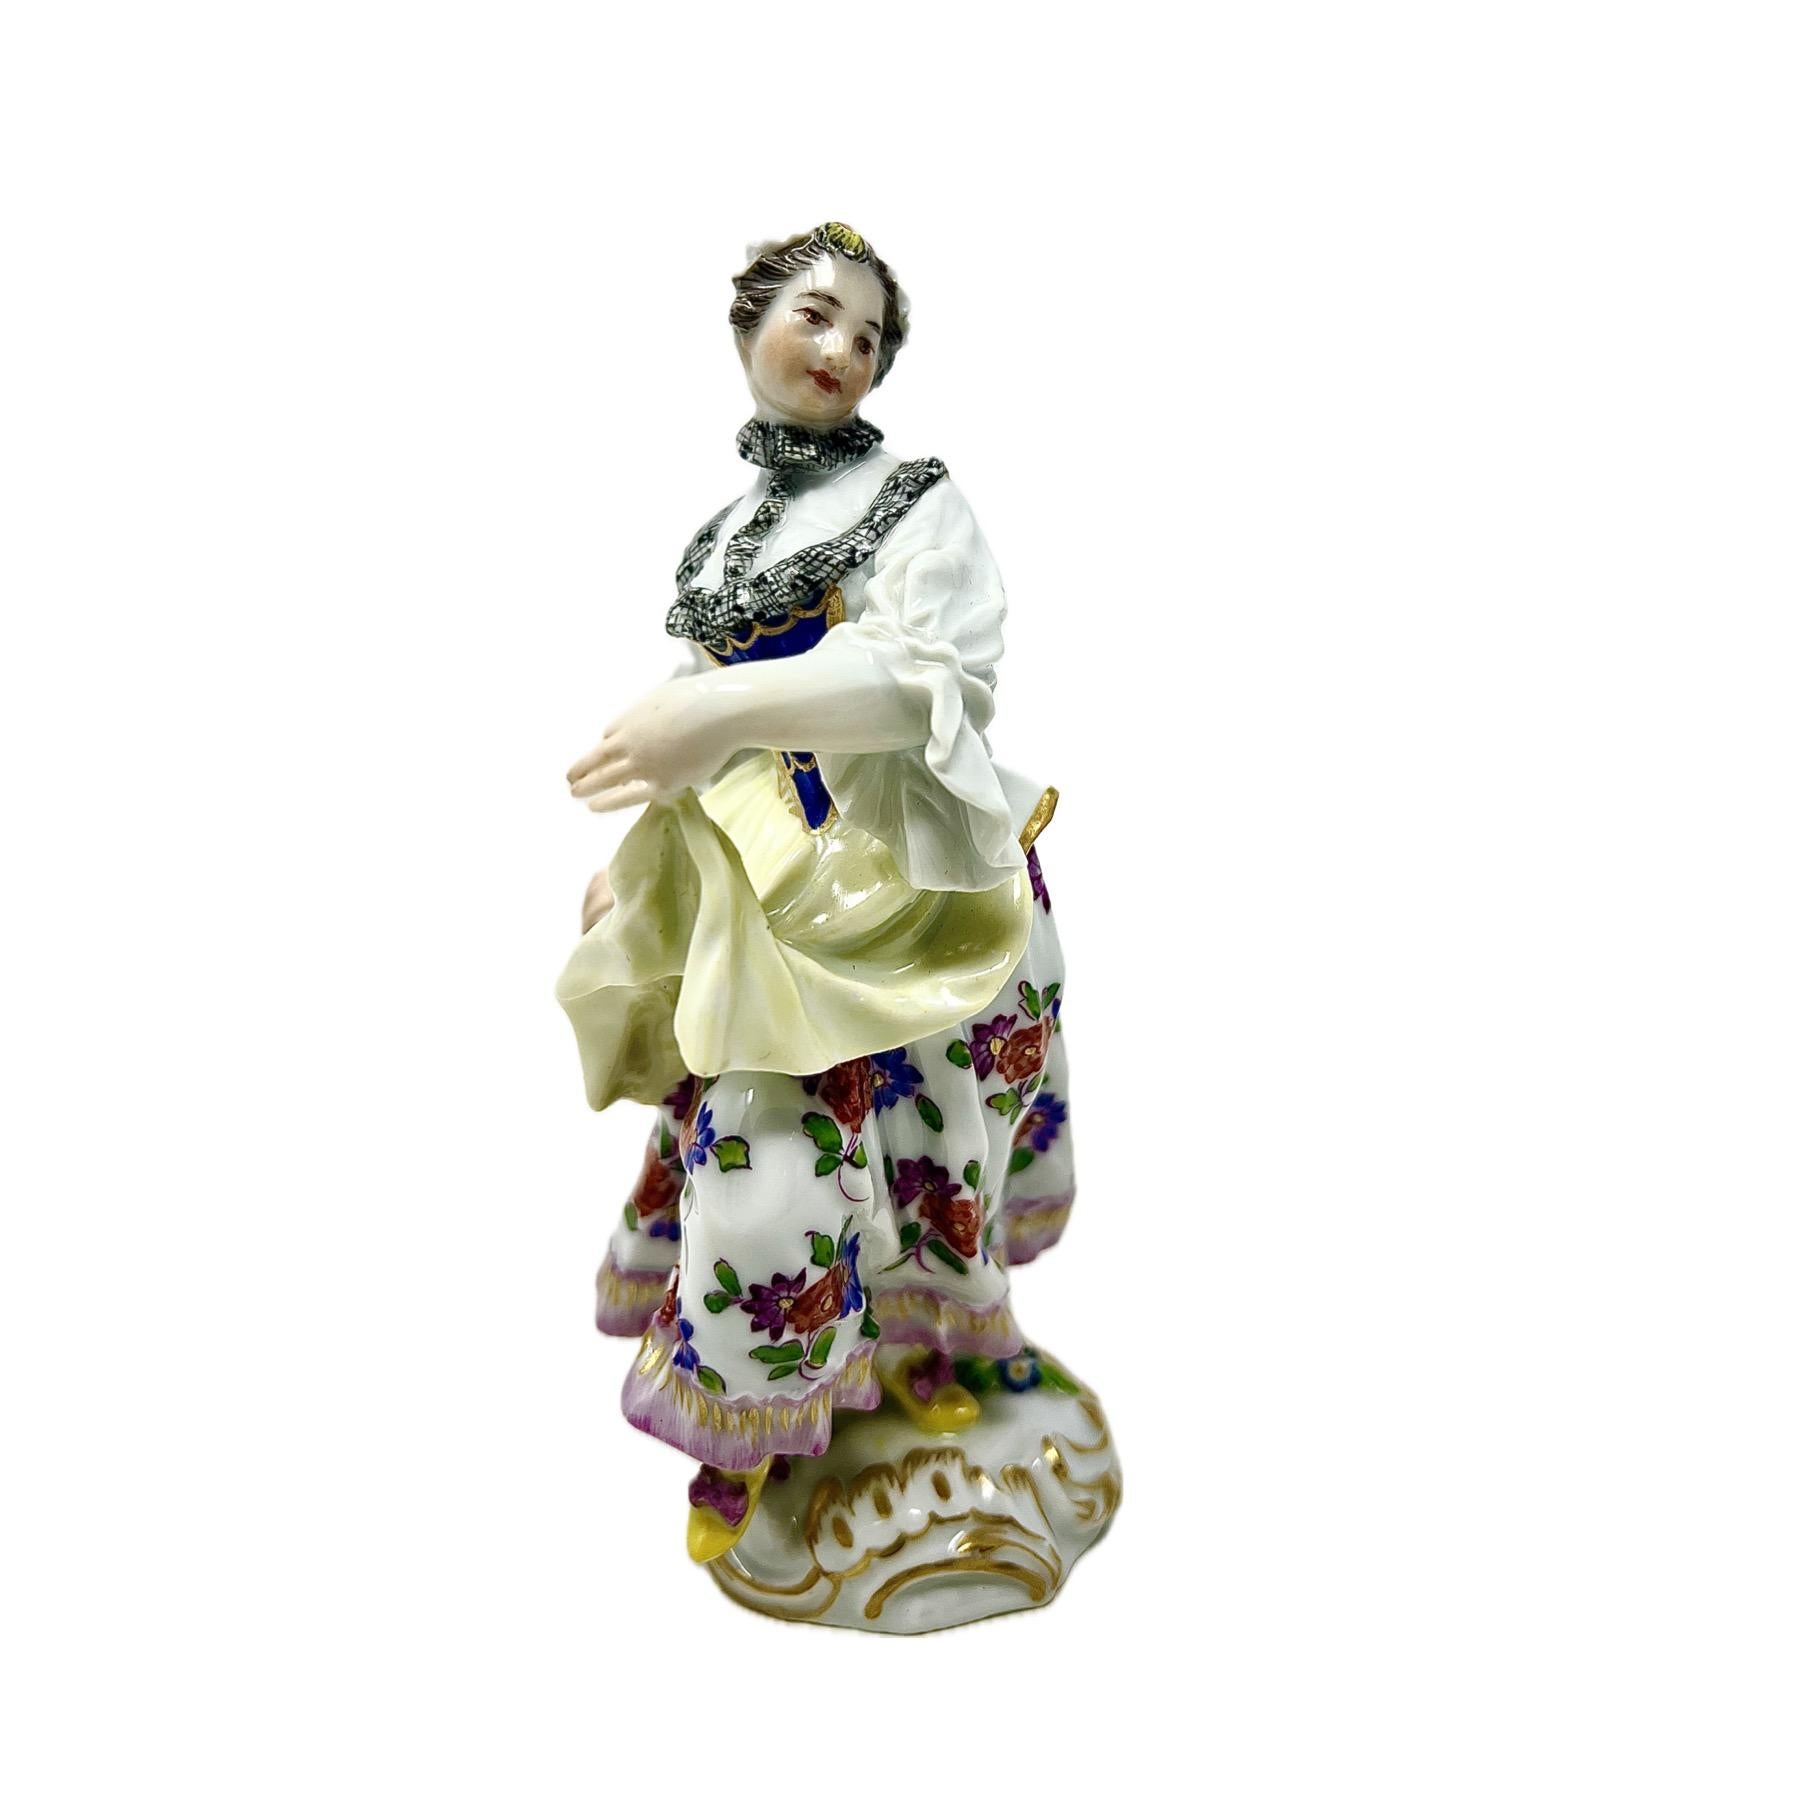 Antique 19th Century German Meissen Porcelain Lady, Circa 1880's.
